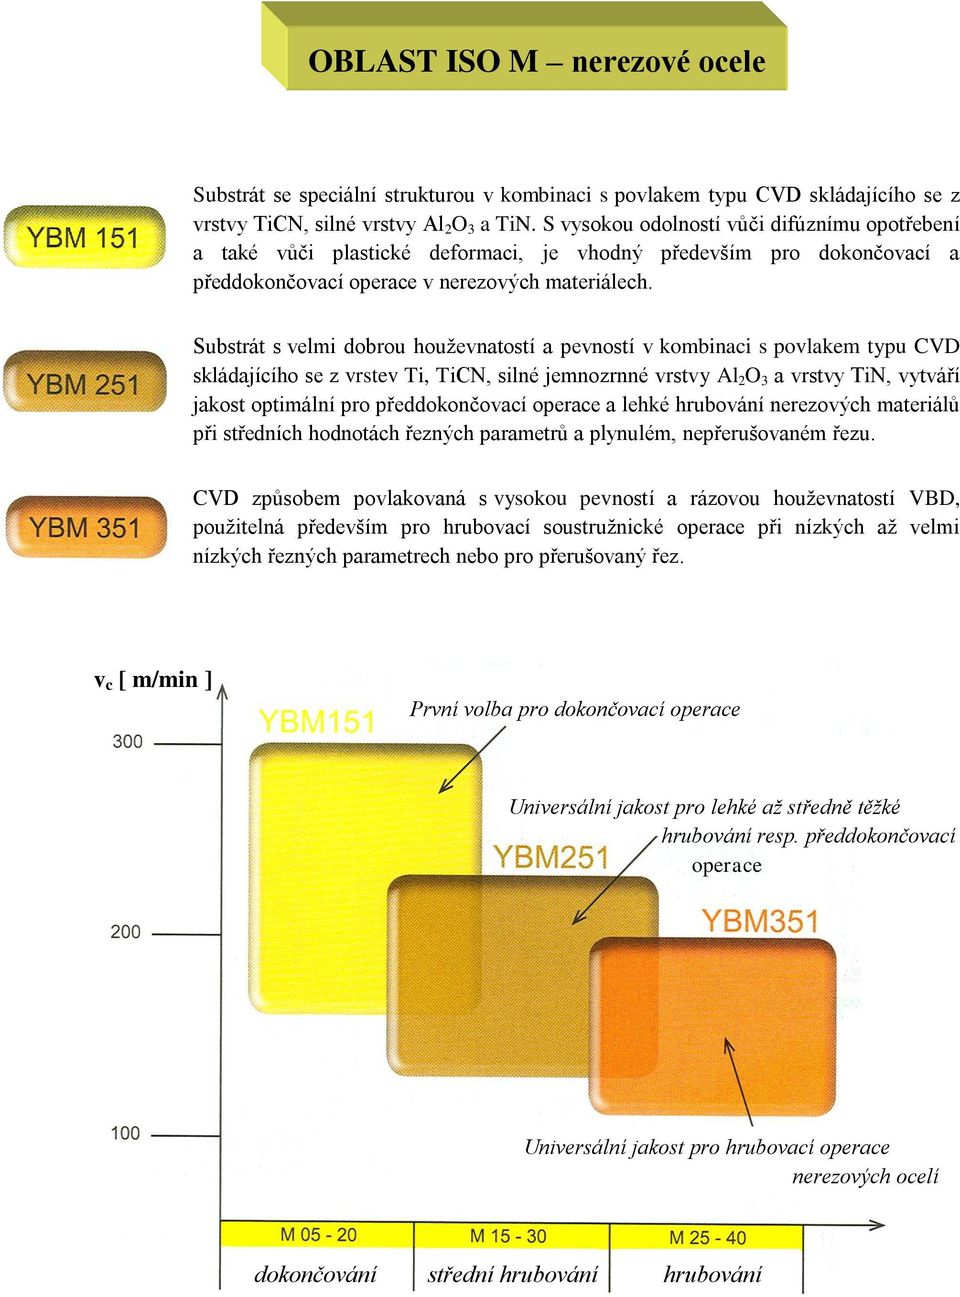 Substrát s velmi dobrou houževnatostí a pevností v kombinaci s povlakem typu CVD skládajícího se z vrstev Ti, TiCN, silné jemnozrnné vrstvy Al 2 O 3 a vrstvy TiN, vytváří jakost optimální pro